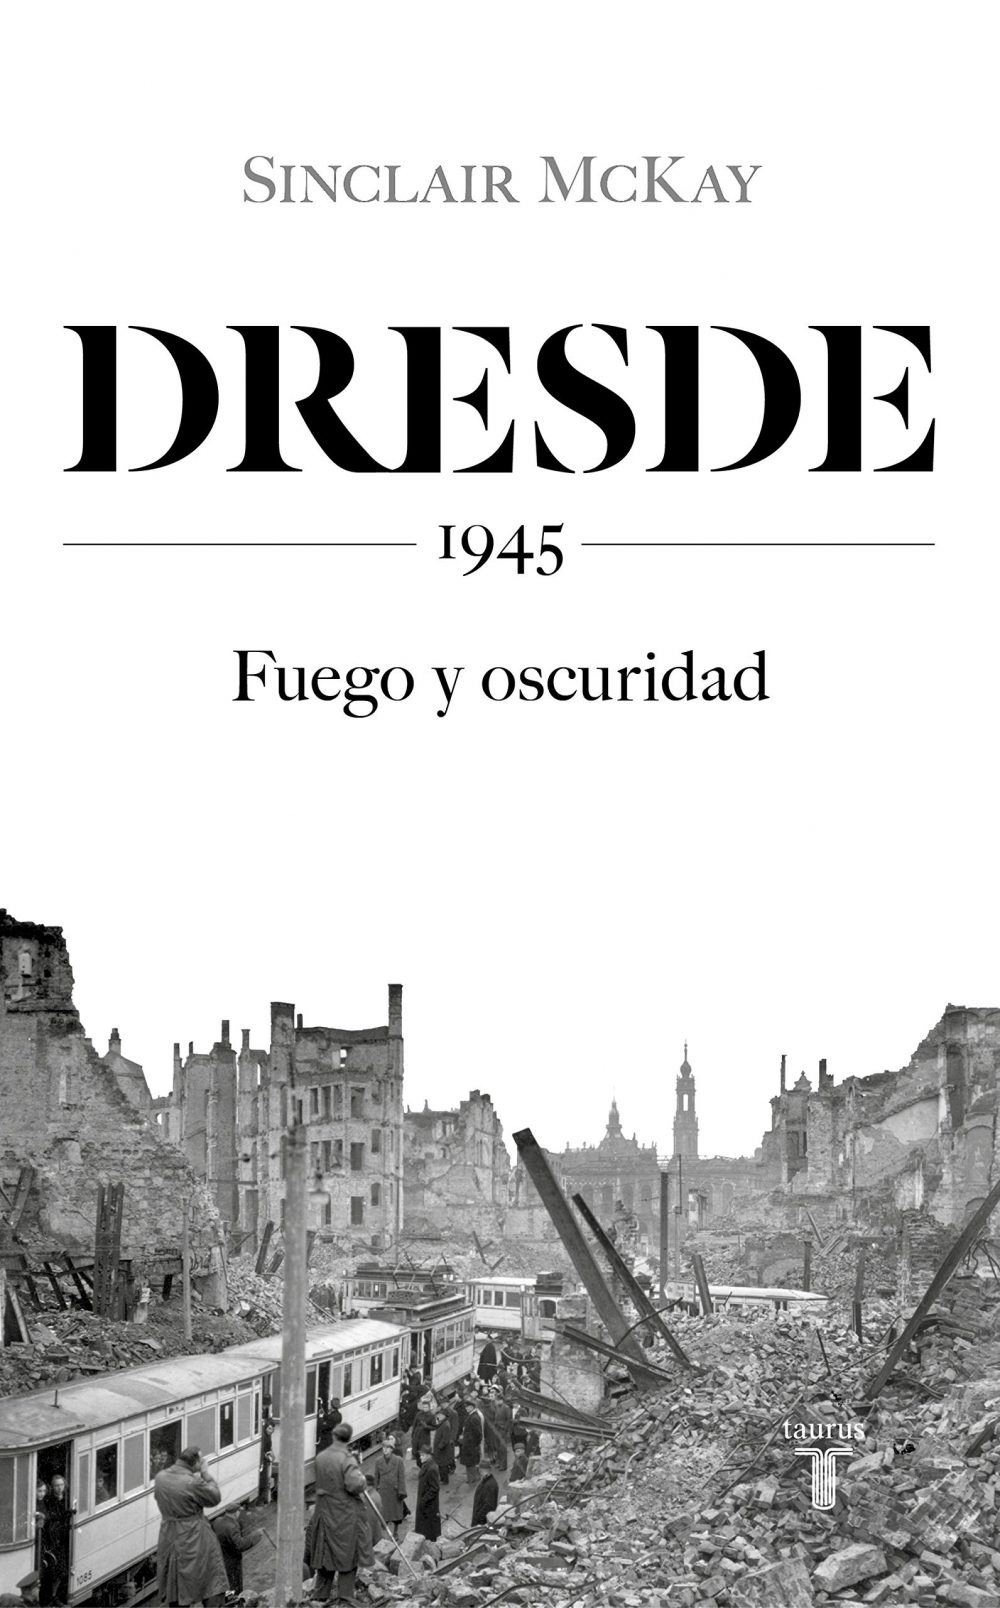 Dresde,1945: Fuego y oscuridad